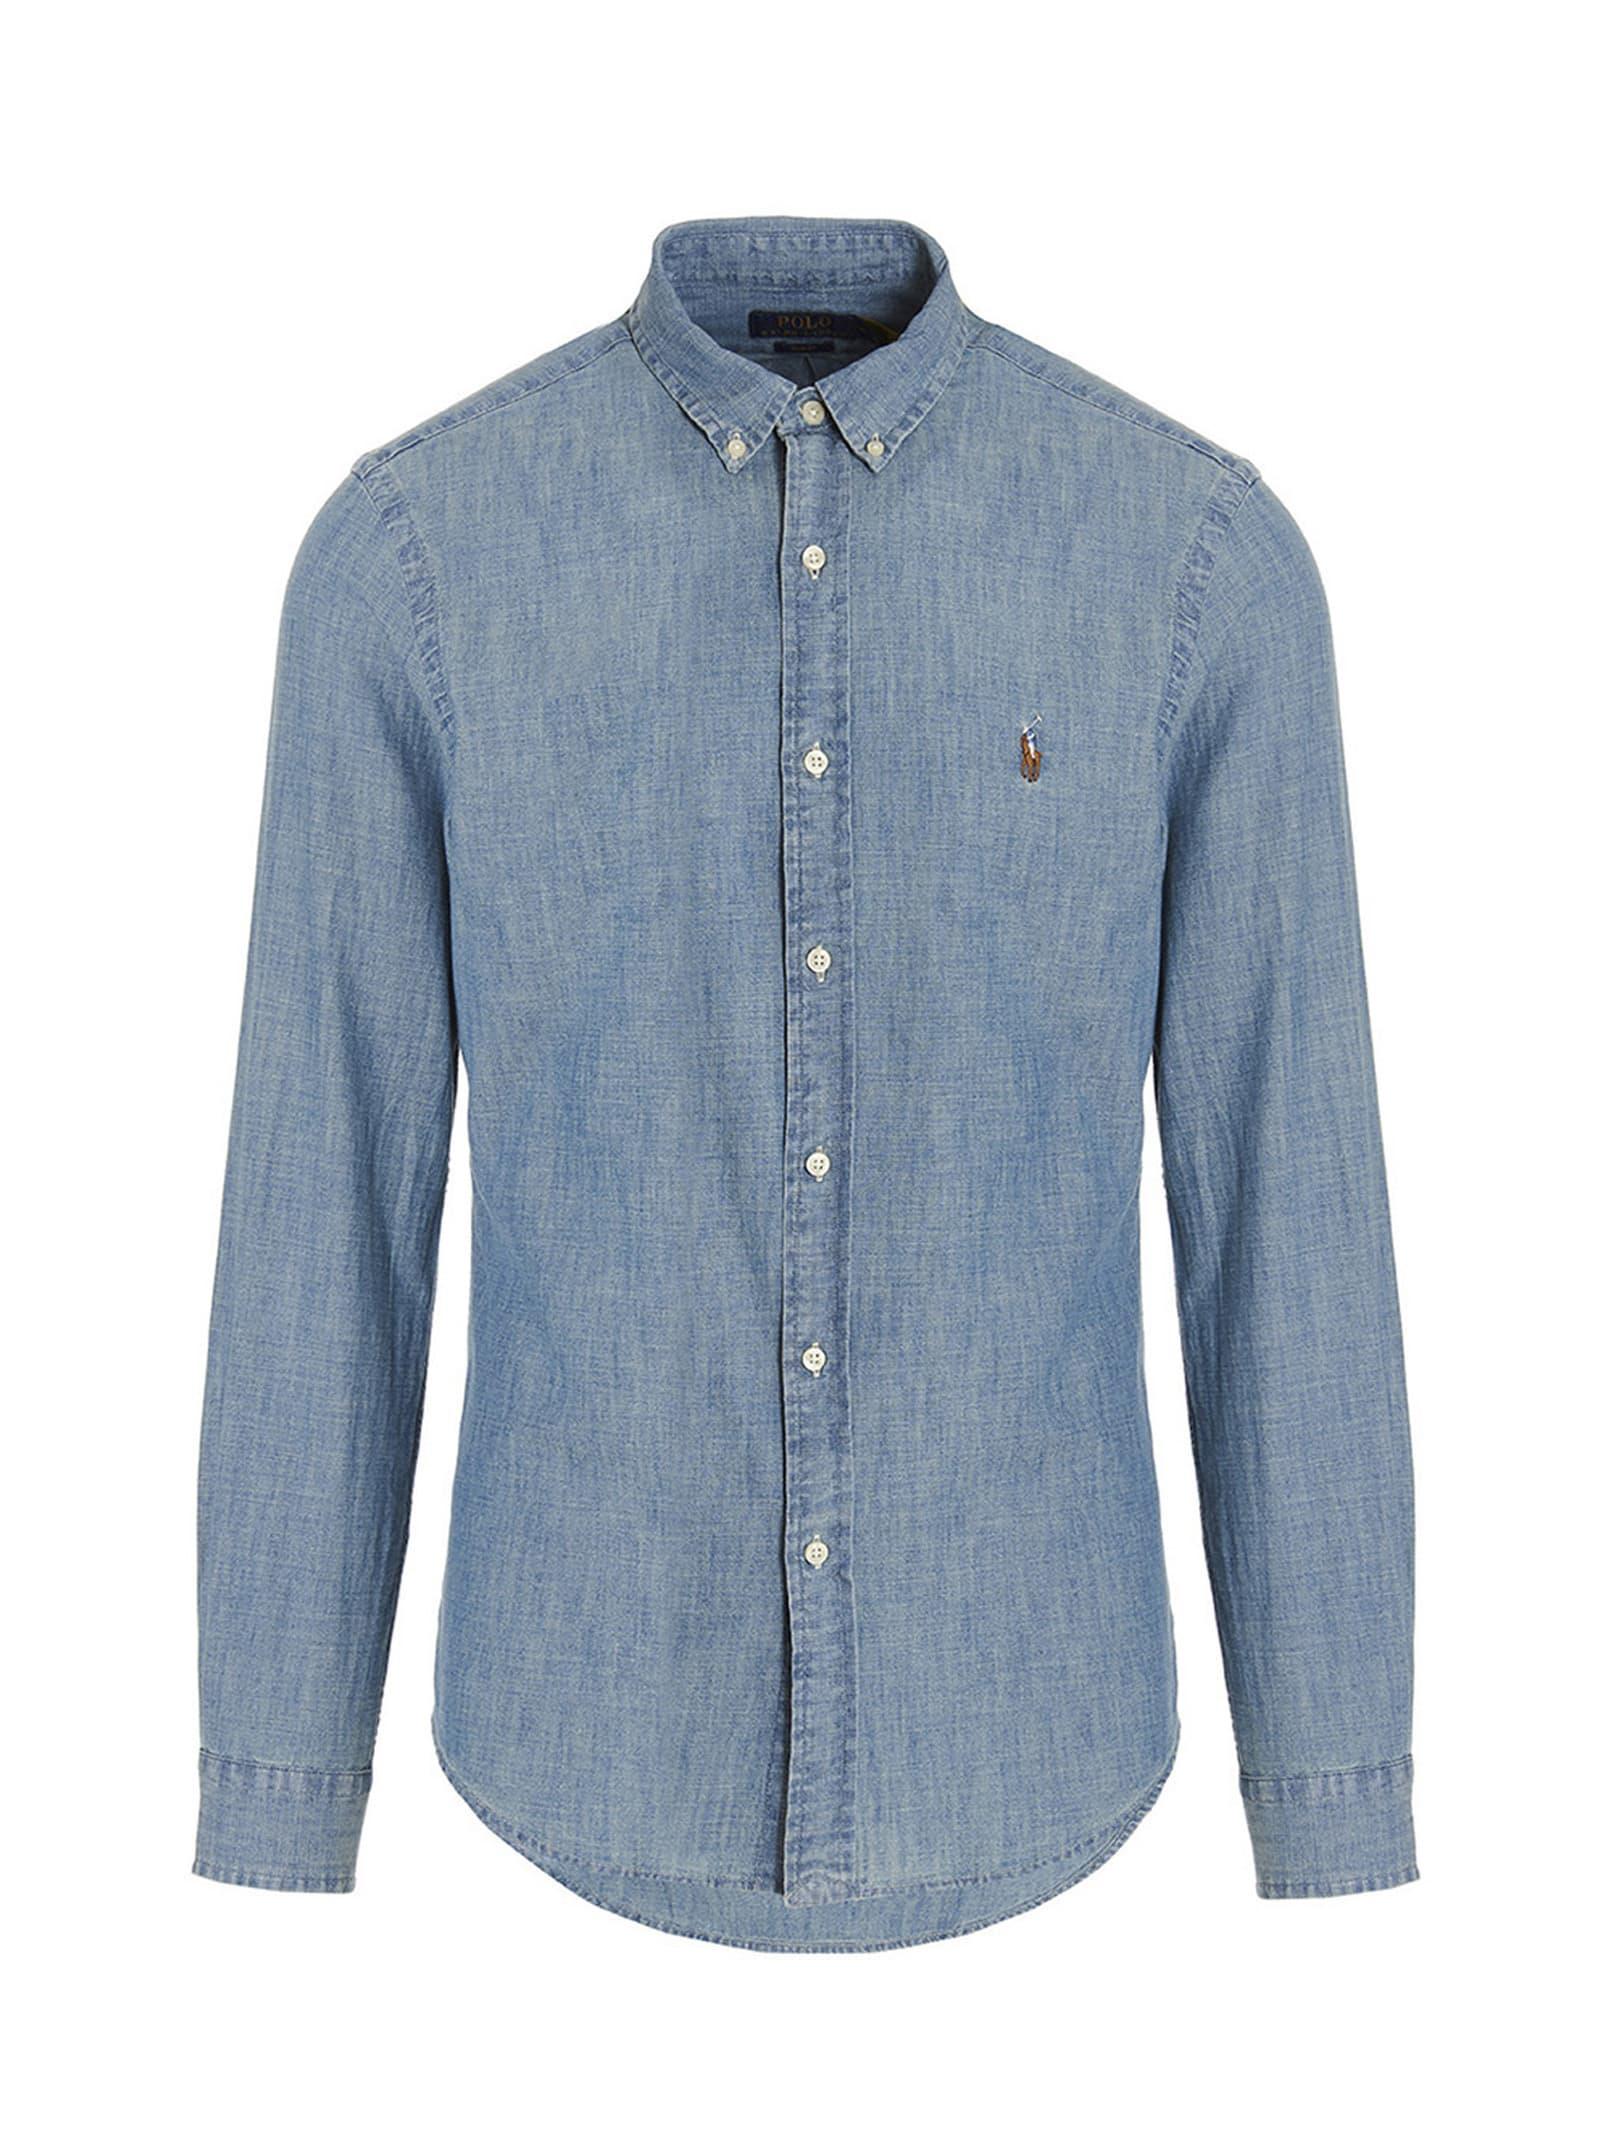 Polo Ralph Lauren 'core Replen' Shirt in Blue for Men | Lyst